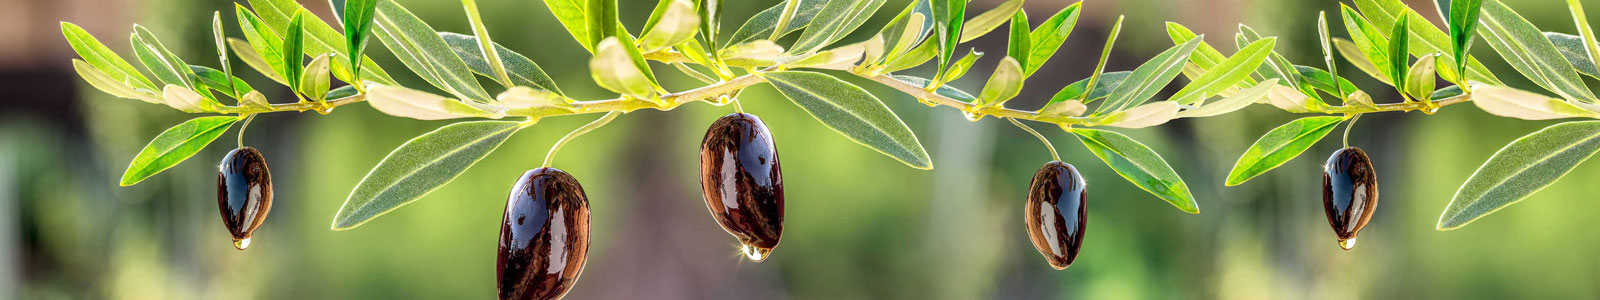 №5989 - Черный оливки на веточках в солнечный день